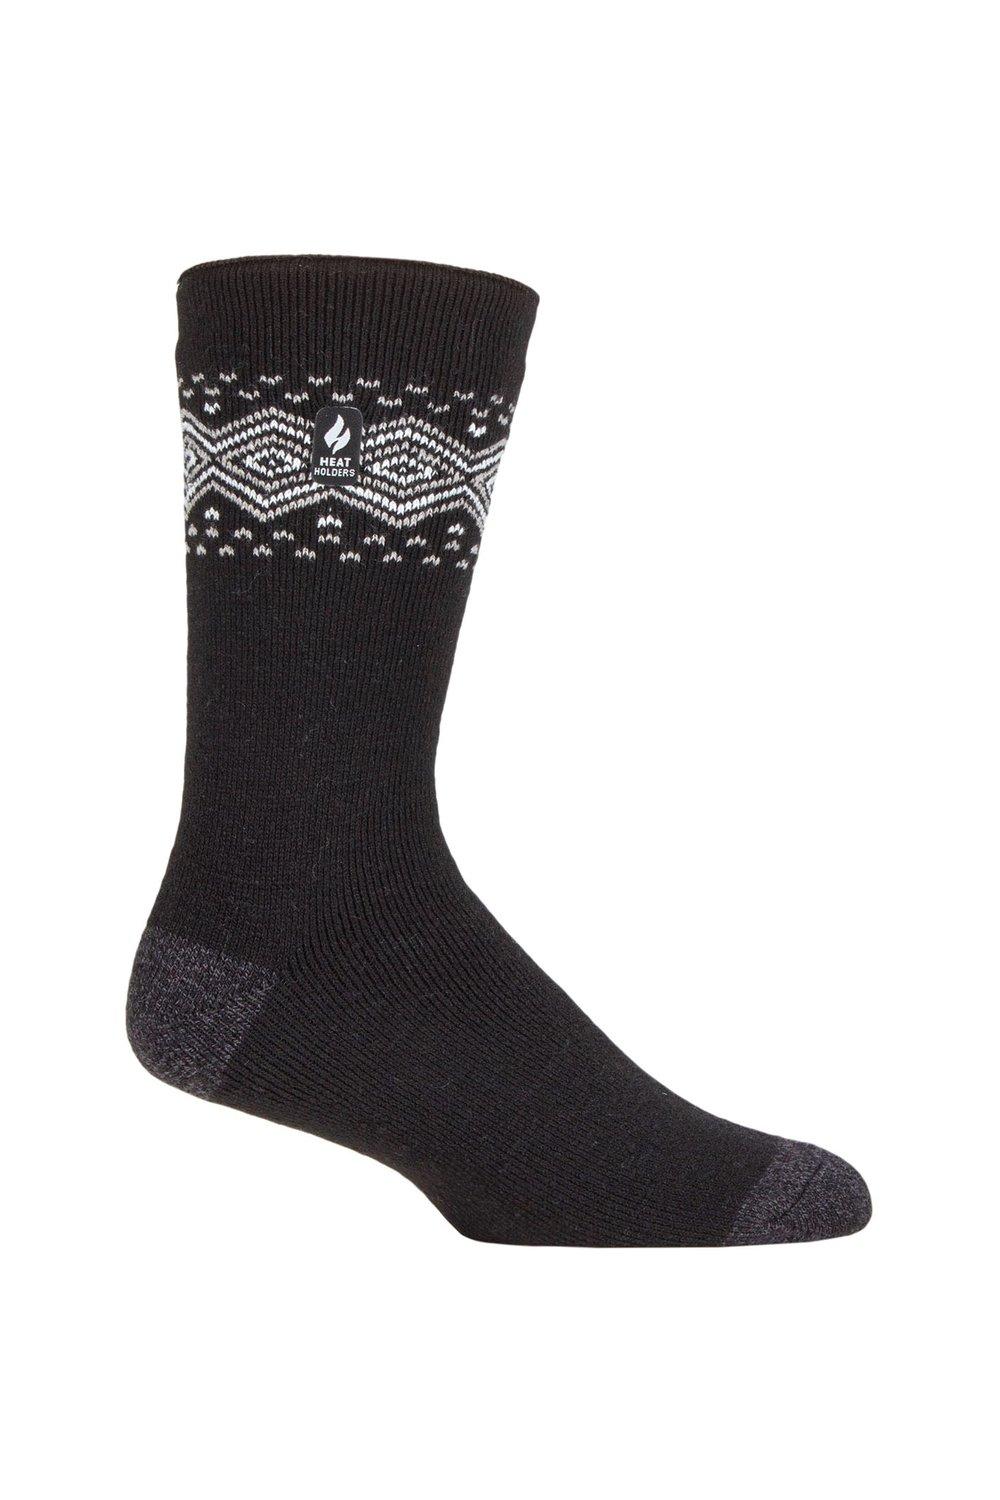 1 Pair 1.6 TOG Lite Striped, Patterned & Argyle Socks